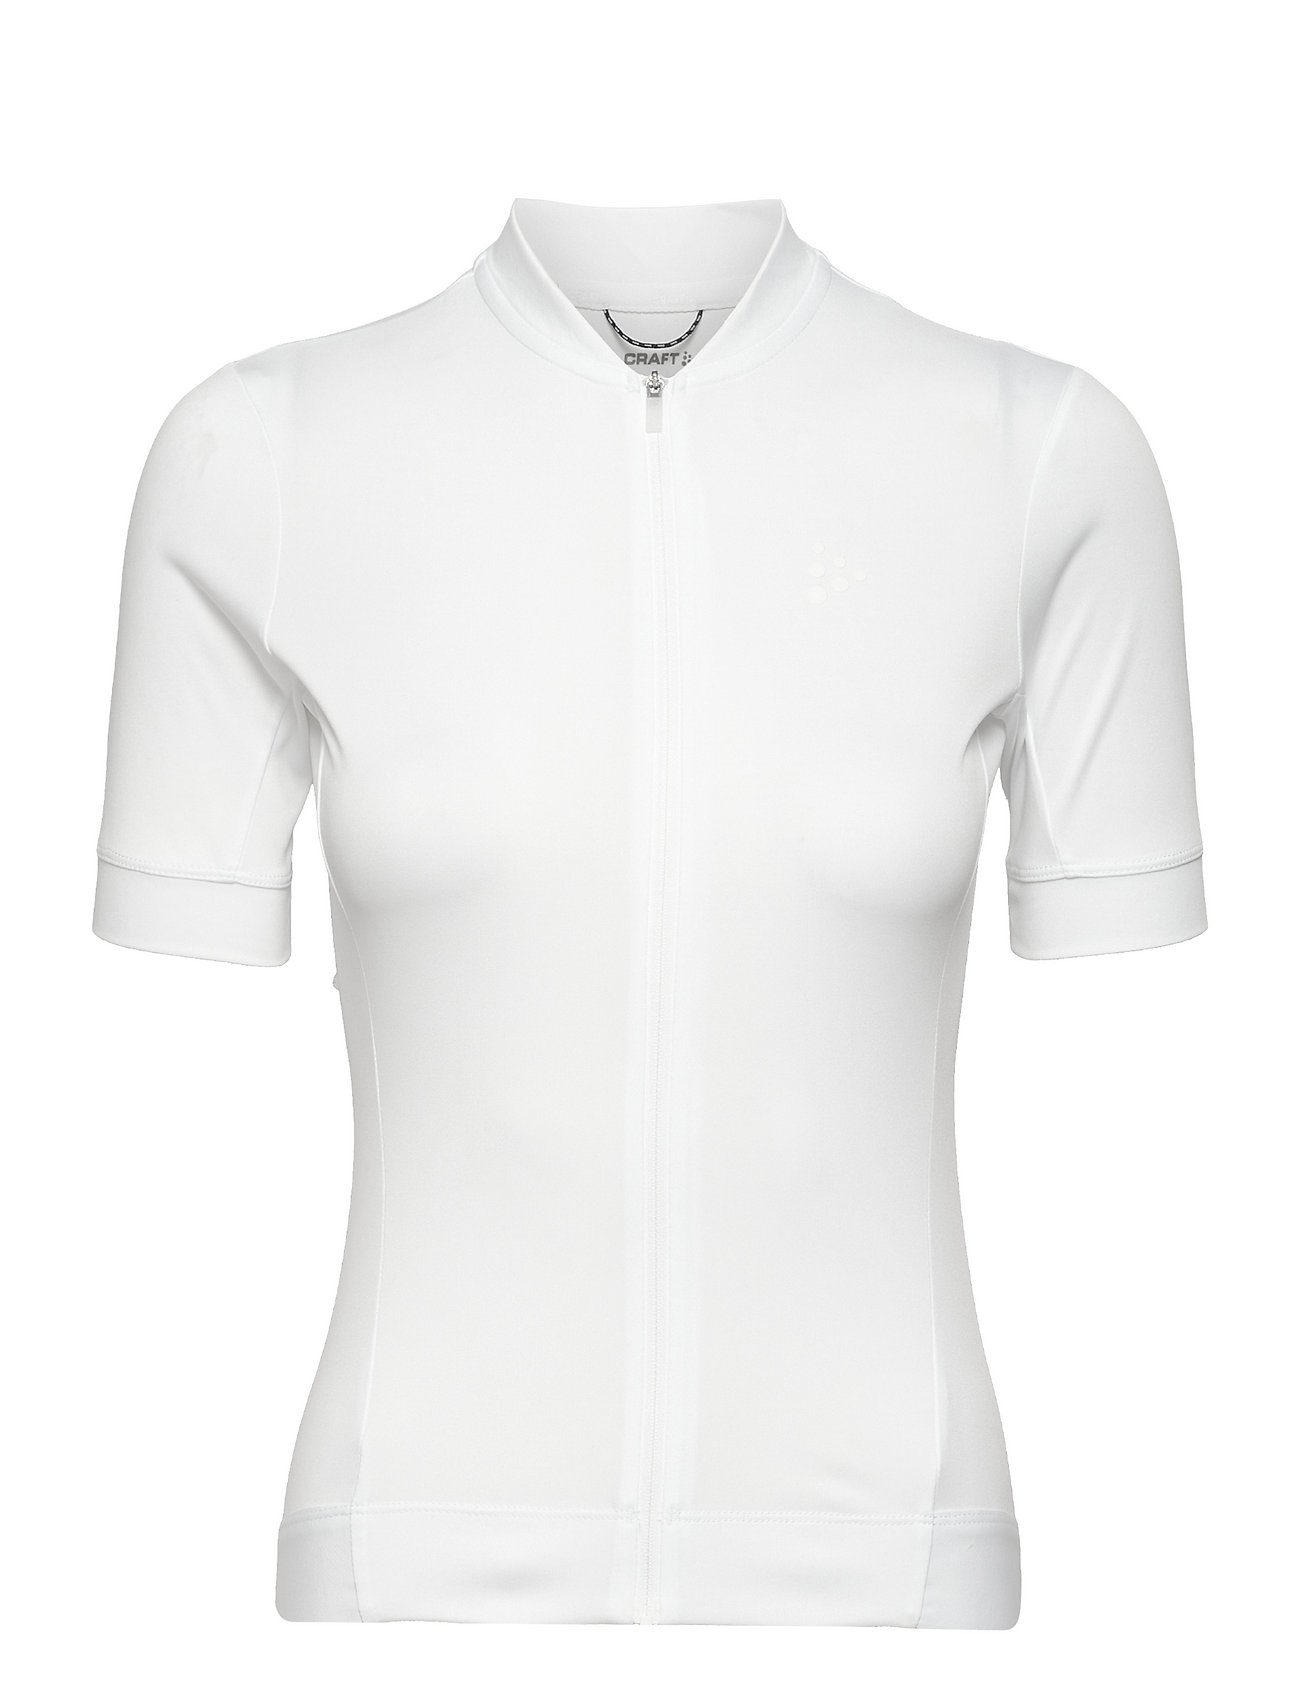 Essence Jersey T-shirts & Tops Short-sleeved Valkoinen Craft